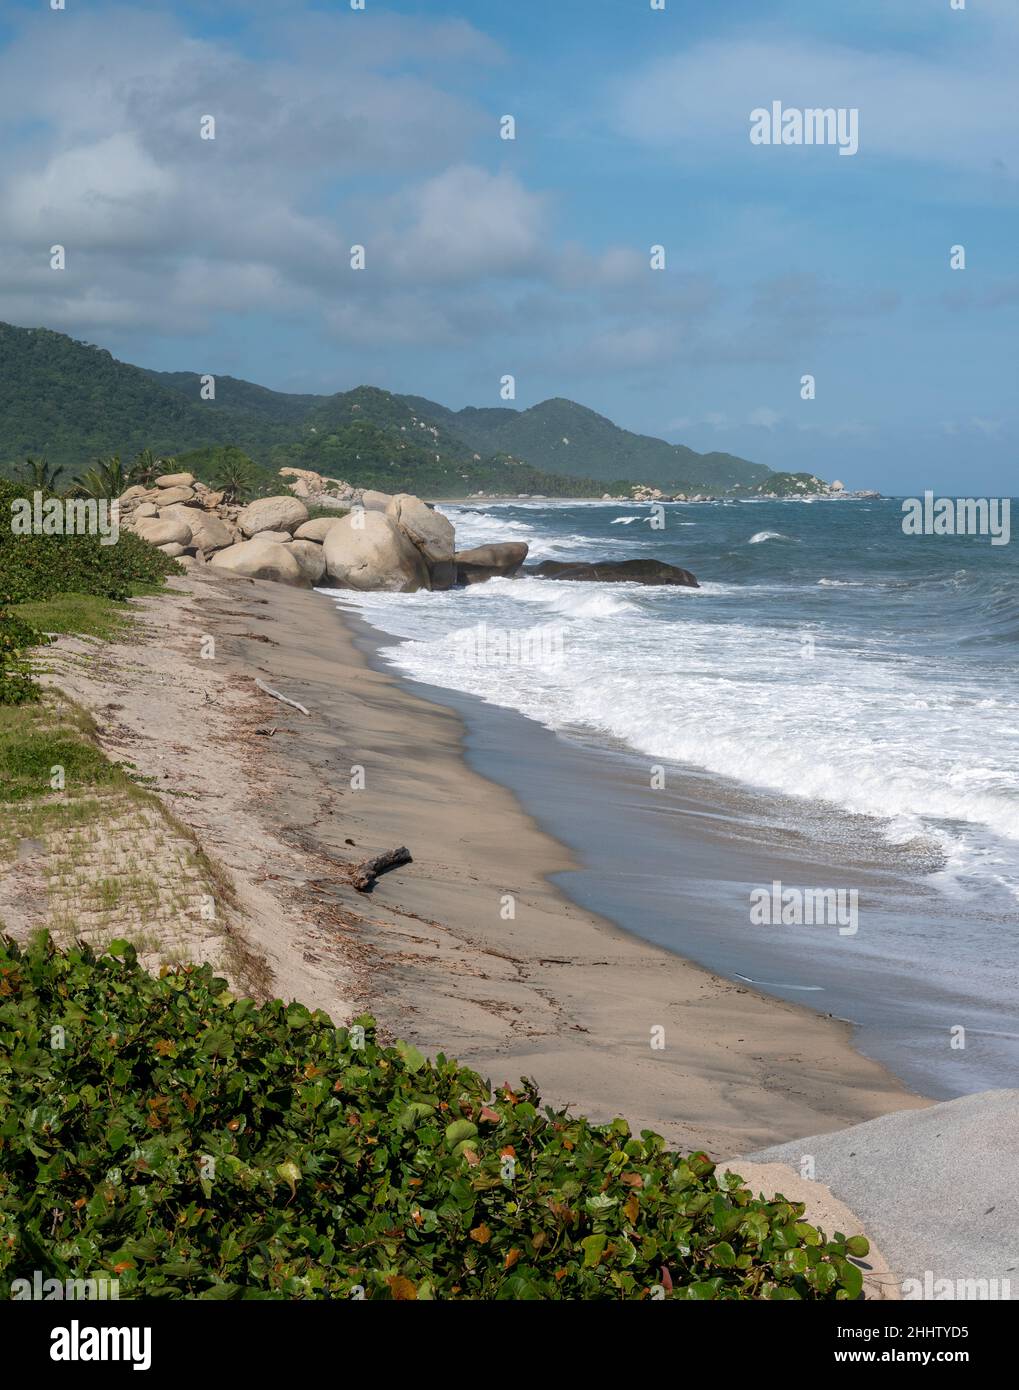 Paesaggio delle onde del mare che si avvicina fortemente alla riva con un lotto di schiuma nel Parco Tayrona, Colombia Foto Stock